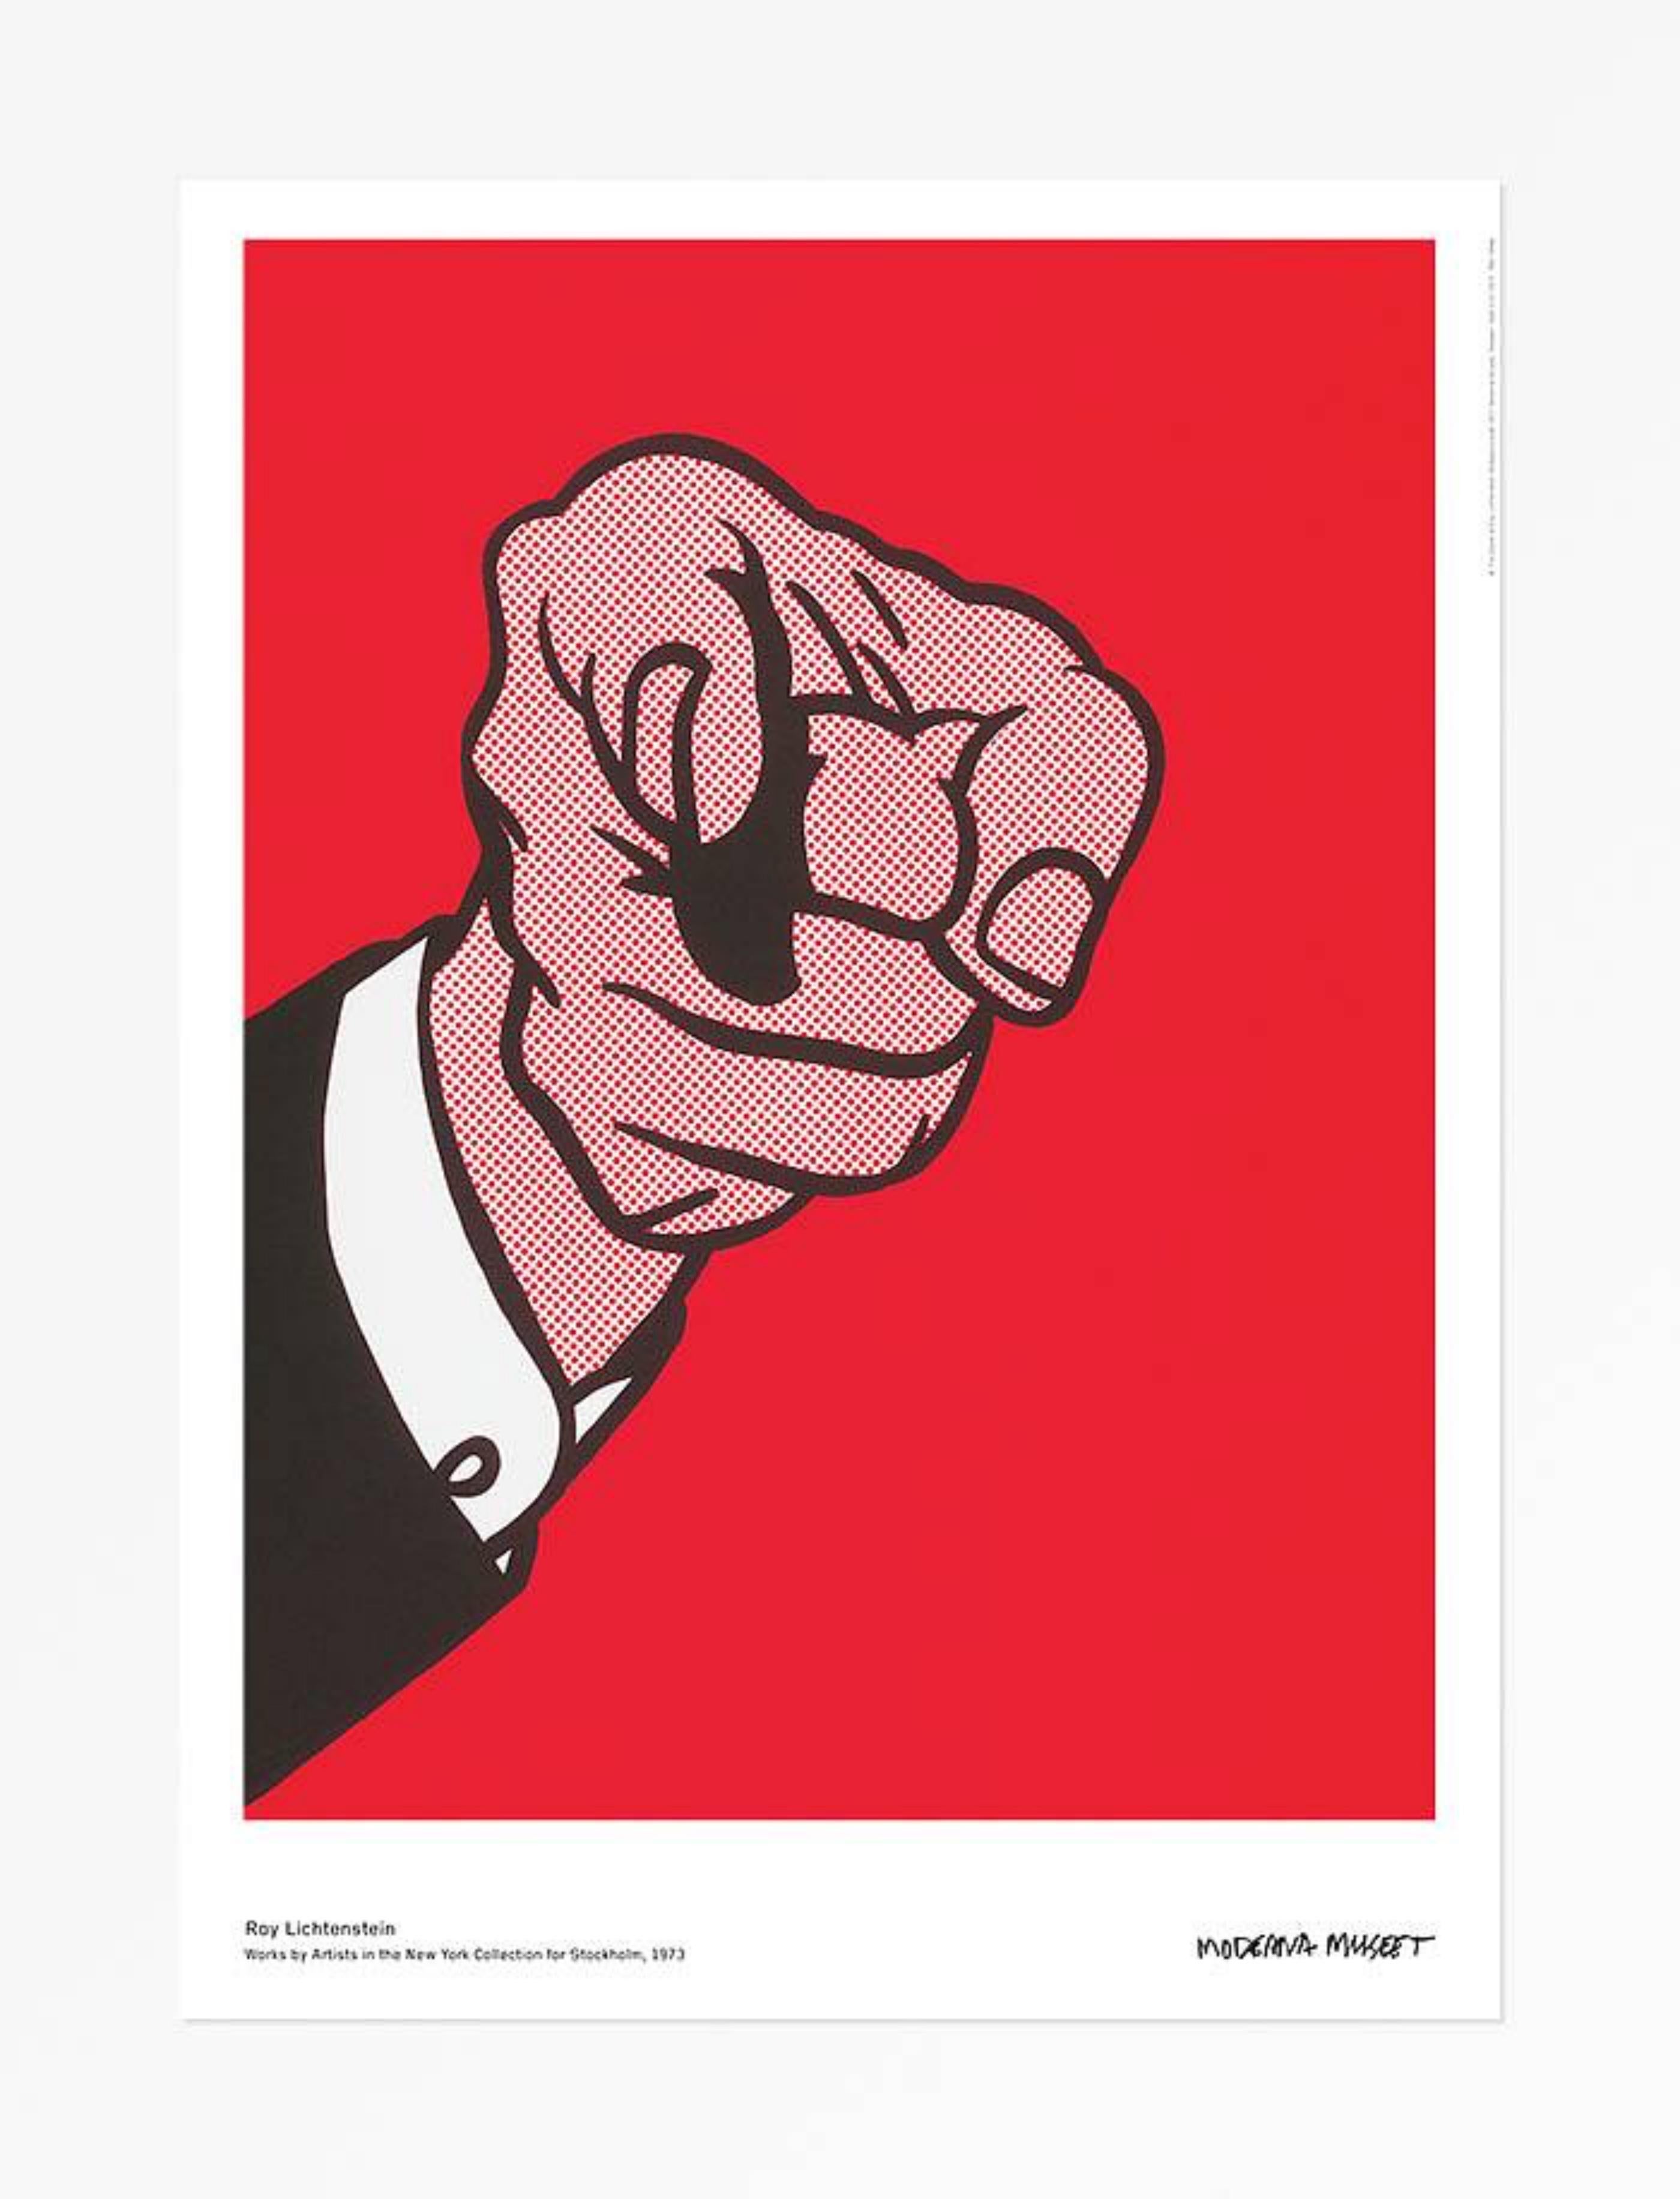 Finger Pointing, Werke von Künstlern in der New Yorker Sammlung für Stockholm, 1973 – Print von Roy Lichtenstein